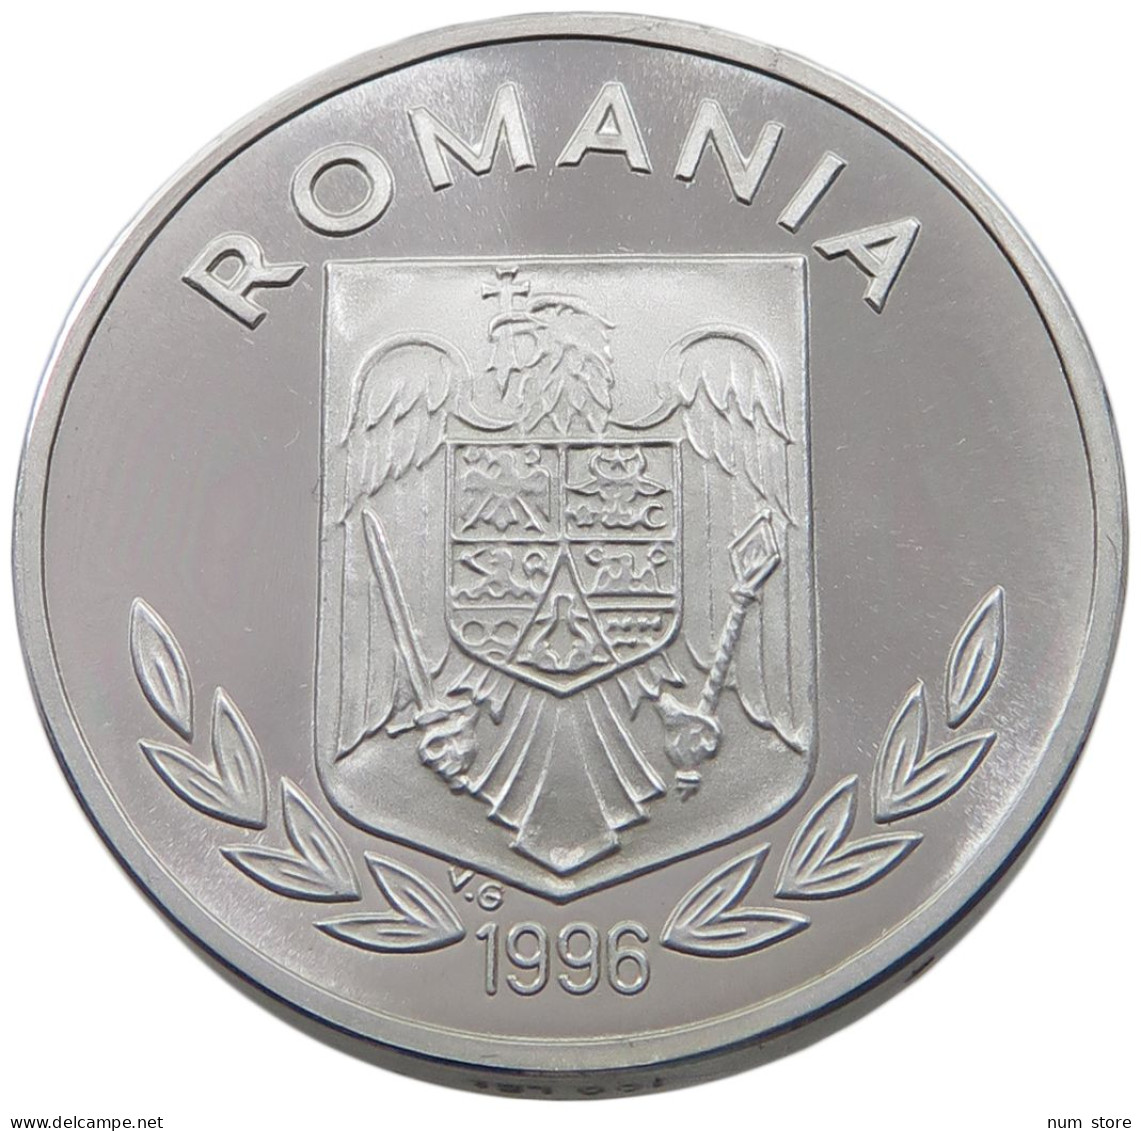 ROMANIA 100 LEI 1996 100 LEI 1996 ALLUMINIUM 4.5 MM THICK PIEDFORT #alb038 0103 - Roumanie